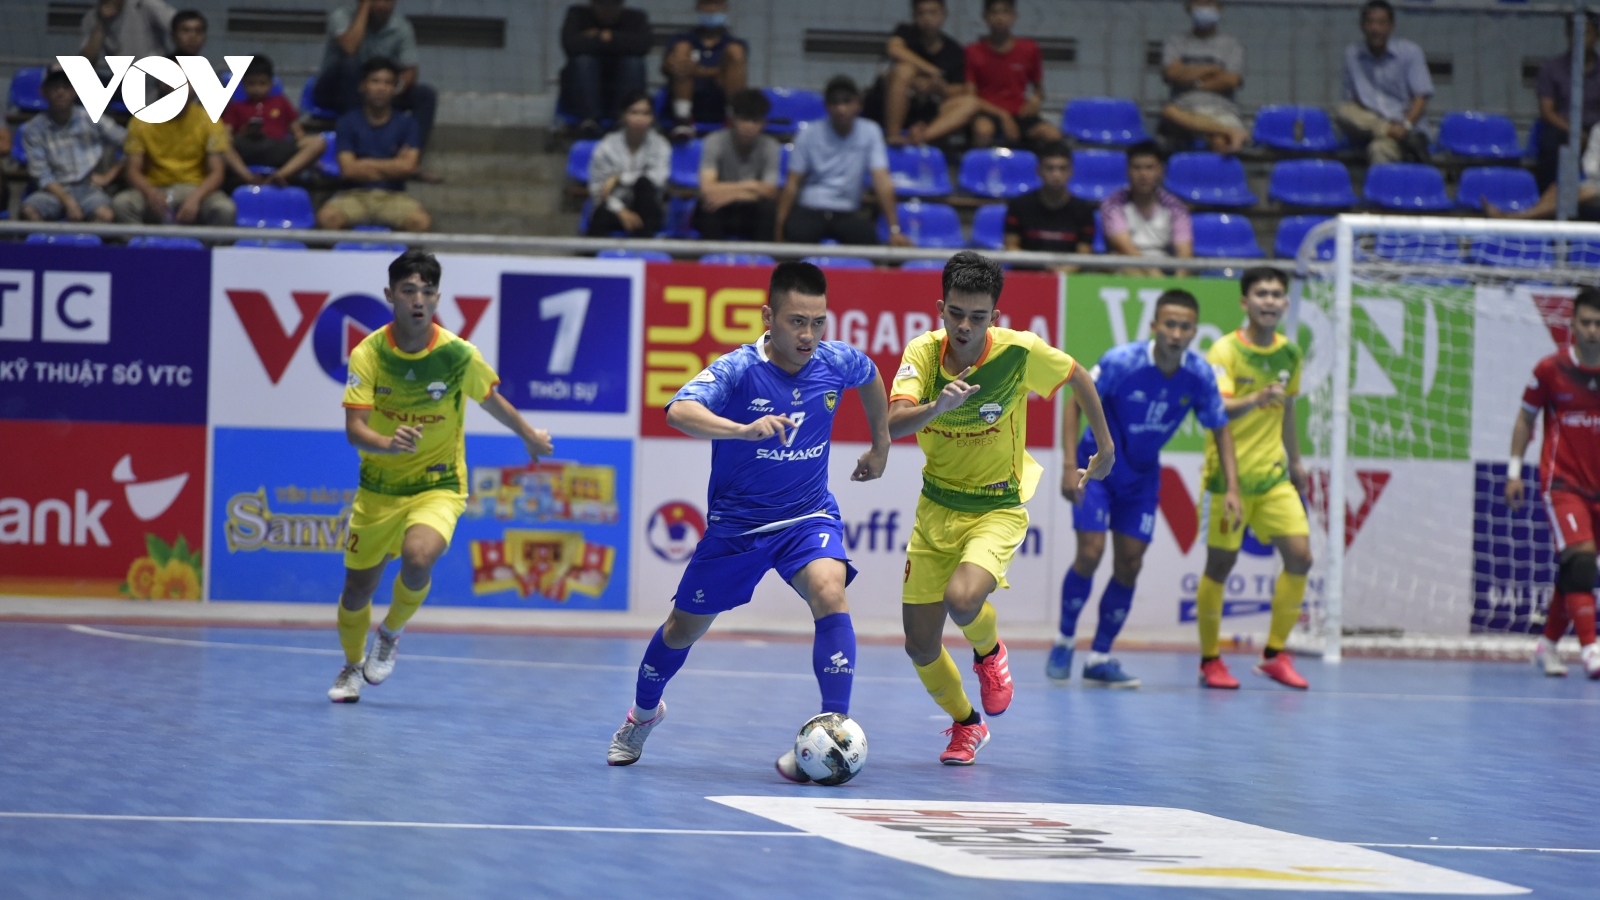 Giải Futsal HDBank VĐQG 2021: Sahako 4-1 Hiếu Hoa Đà Nẵng